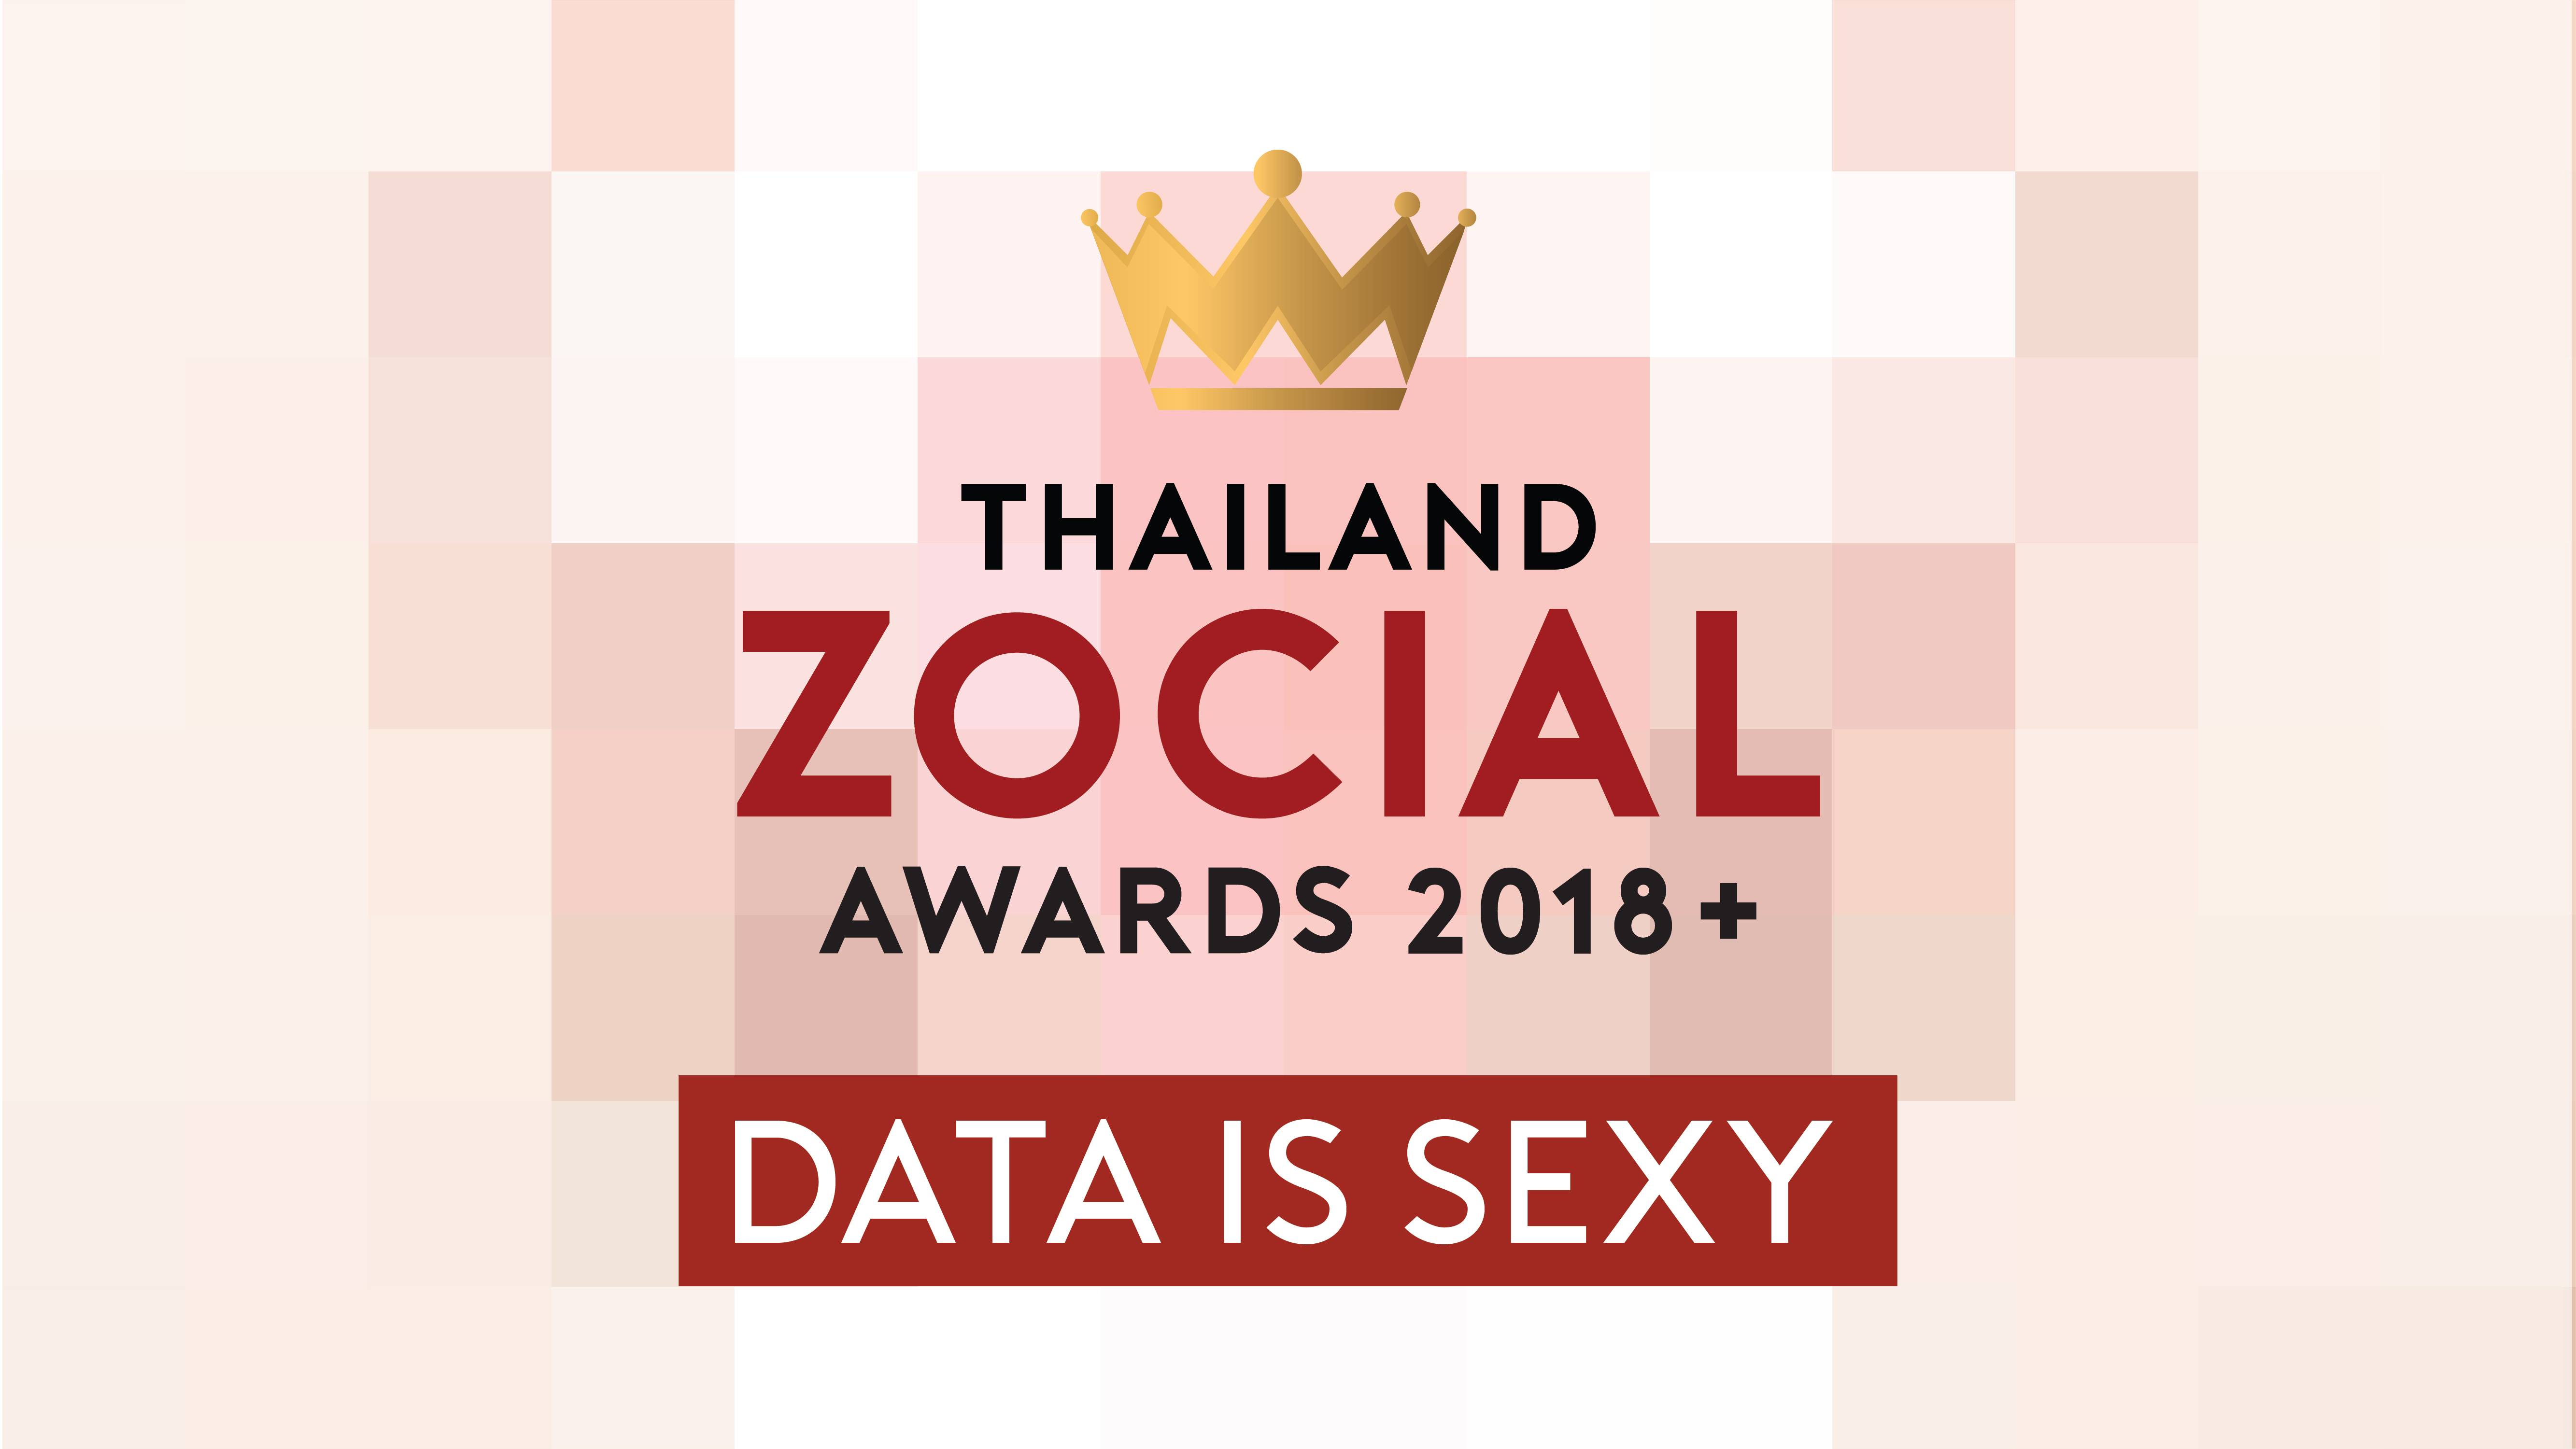 “โธธ โซเซียล โอบีว็อค” เปิดโผผู้เข้ารอบ “Thailand Zocial Awards 2018”